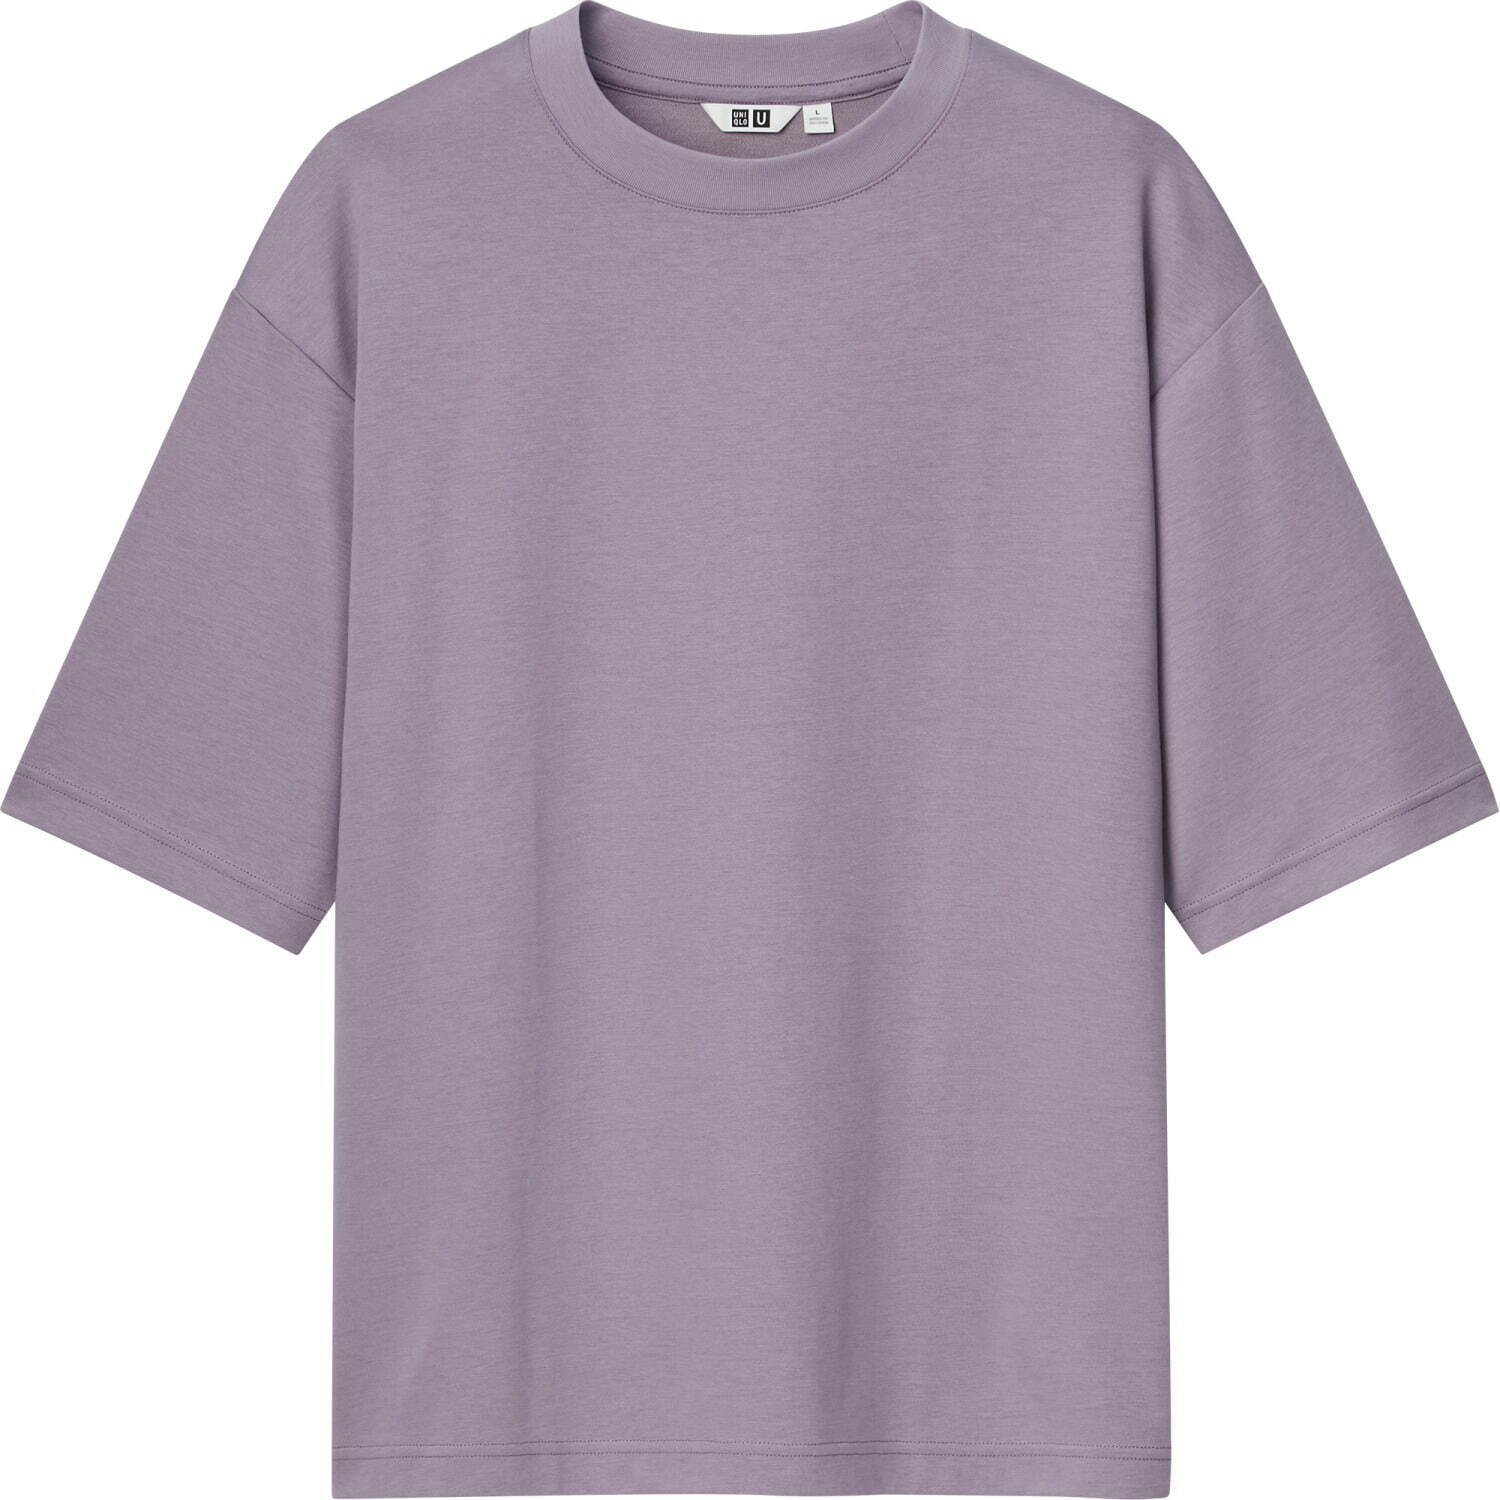 エアリズムコットンオーバーサイズTシャツ(5分袖) 1,500円